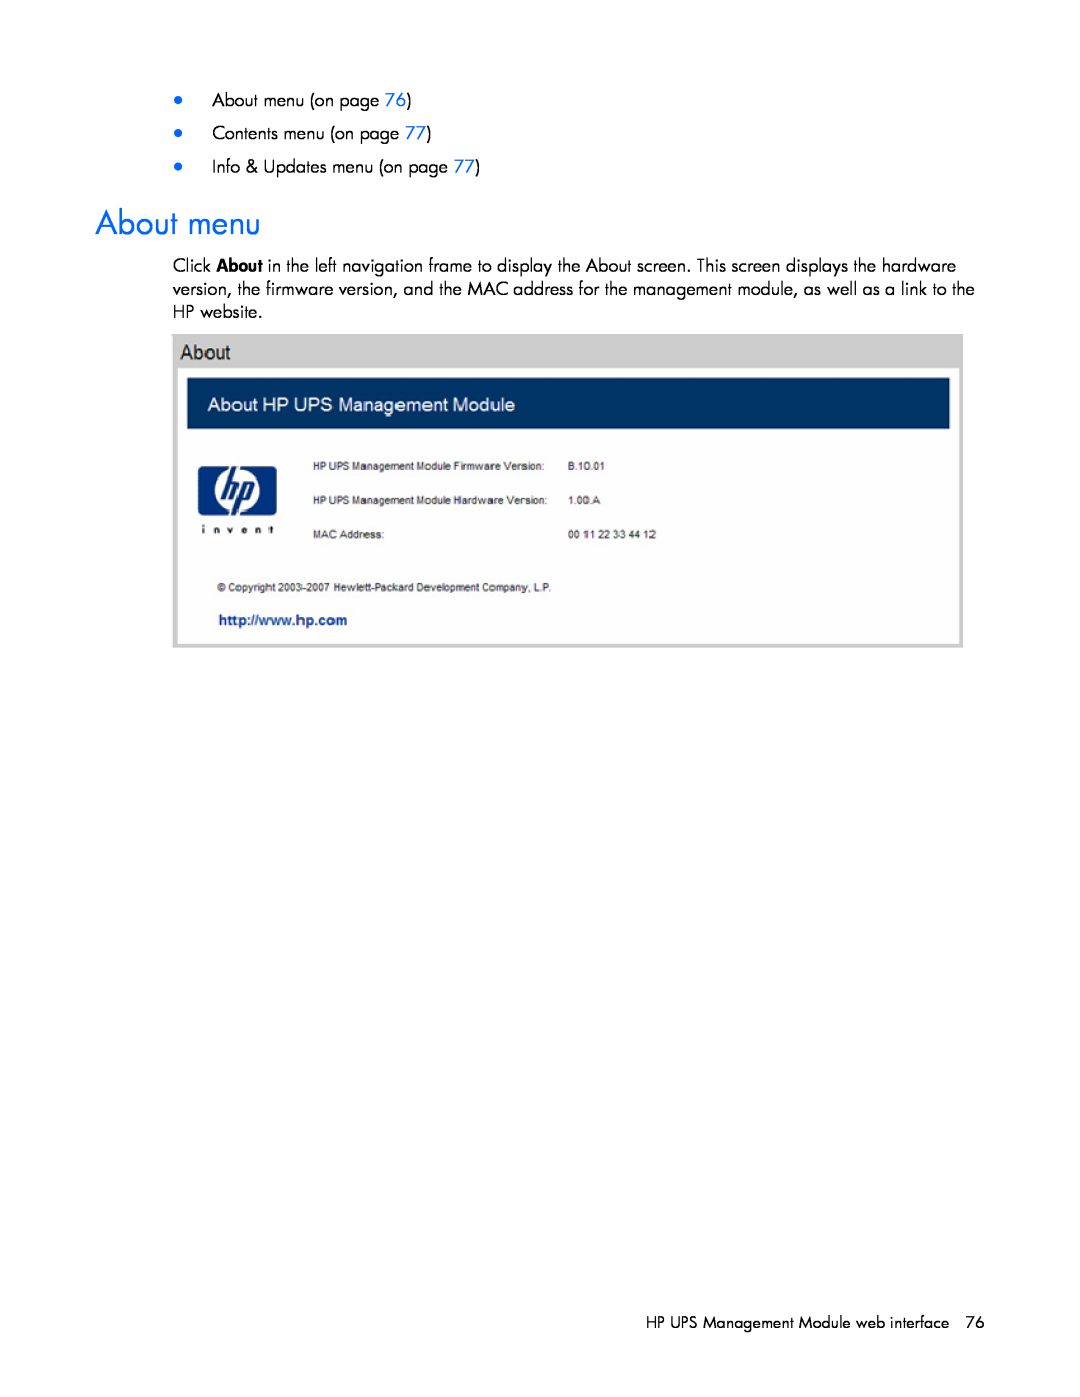 HP J4367A, A6584A, A1354A, A1353A, A1356A, J4373A About menu on page Contents menu on page Info & Updates menu on page 